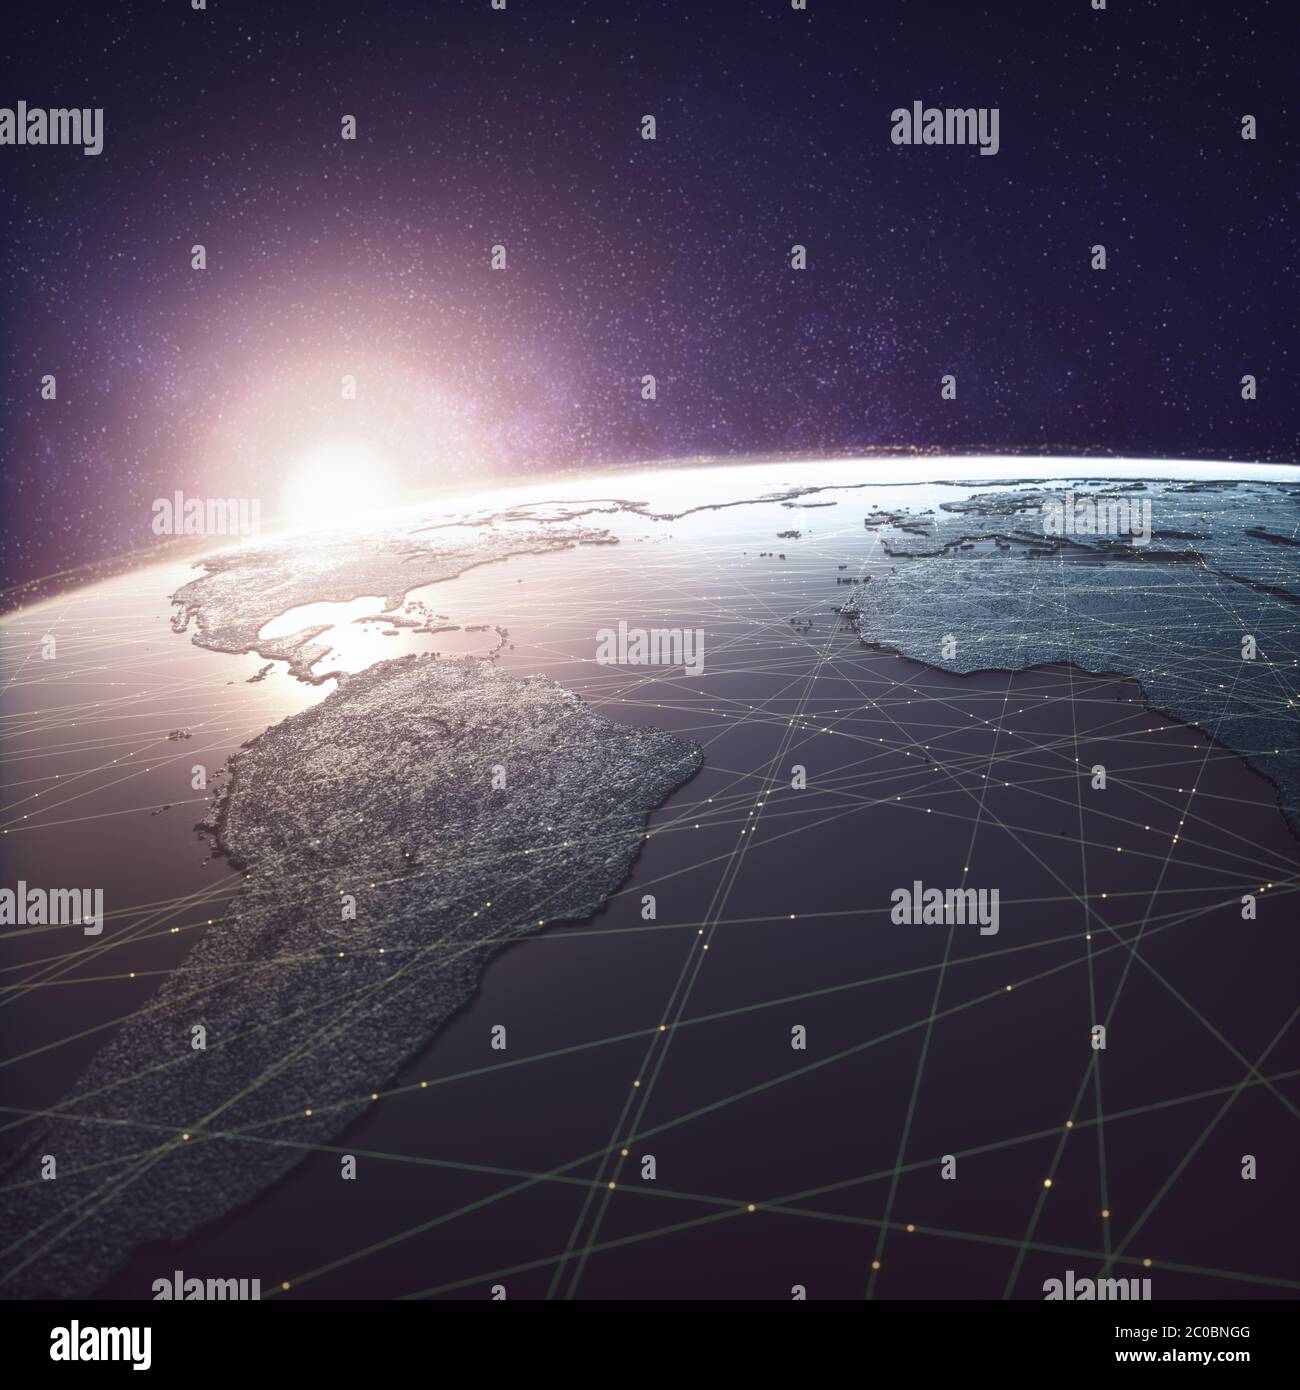 Mondo globalizzato, tecnologia digitale. Connessioni e cloud computing nel mondo virtuale. Mappa del mondo con collegamenti dati satellitari. Connettività c.a. Foto Stock